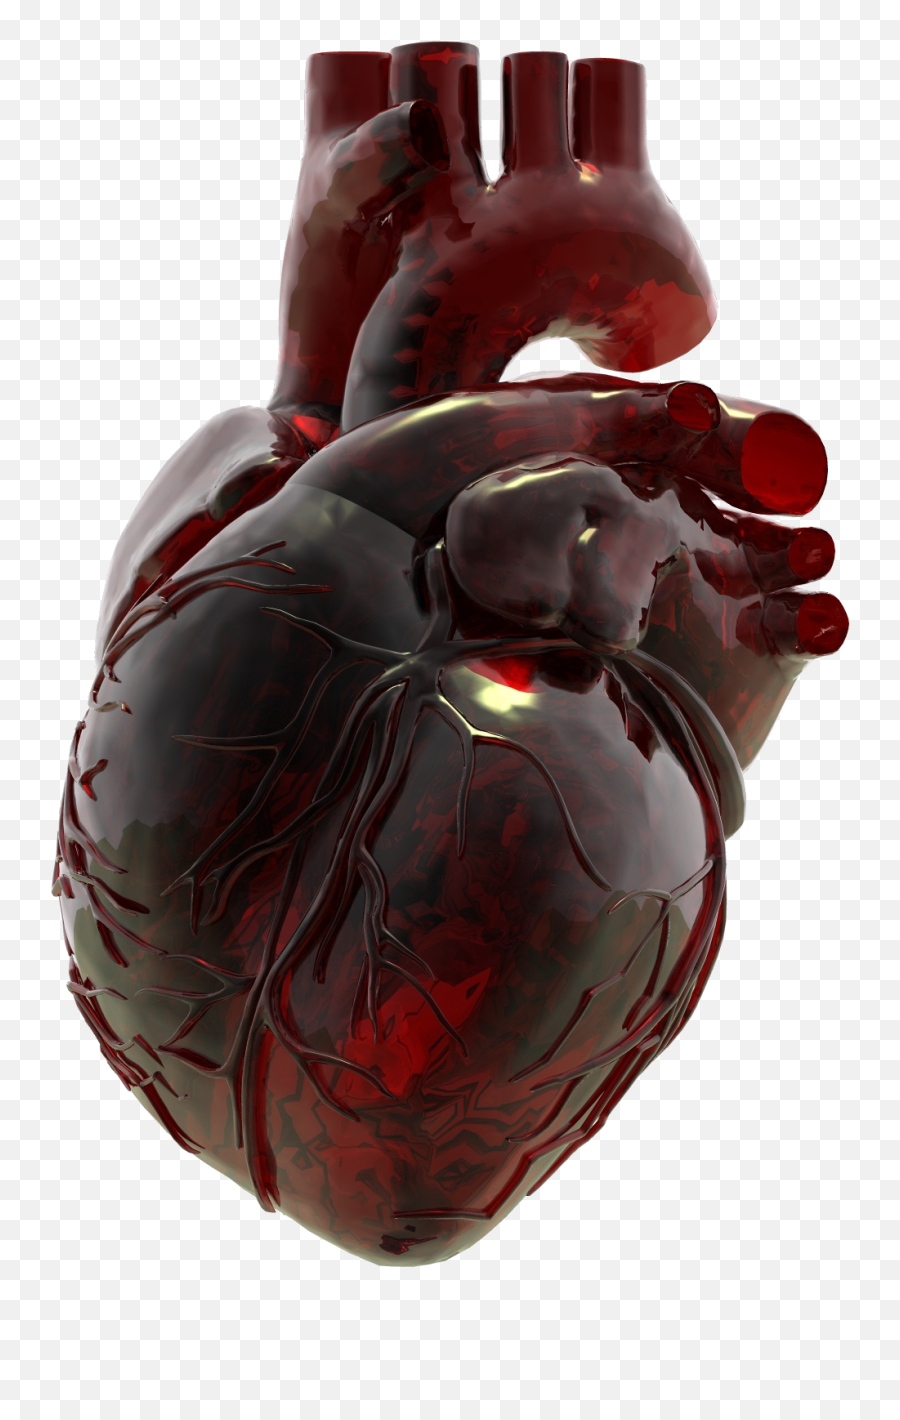 Red Glass Heart Art Human - Anatomical Heart Glass Jar Png,Human Heart Png